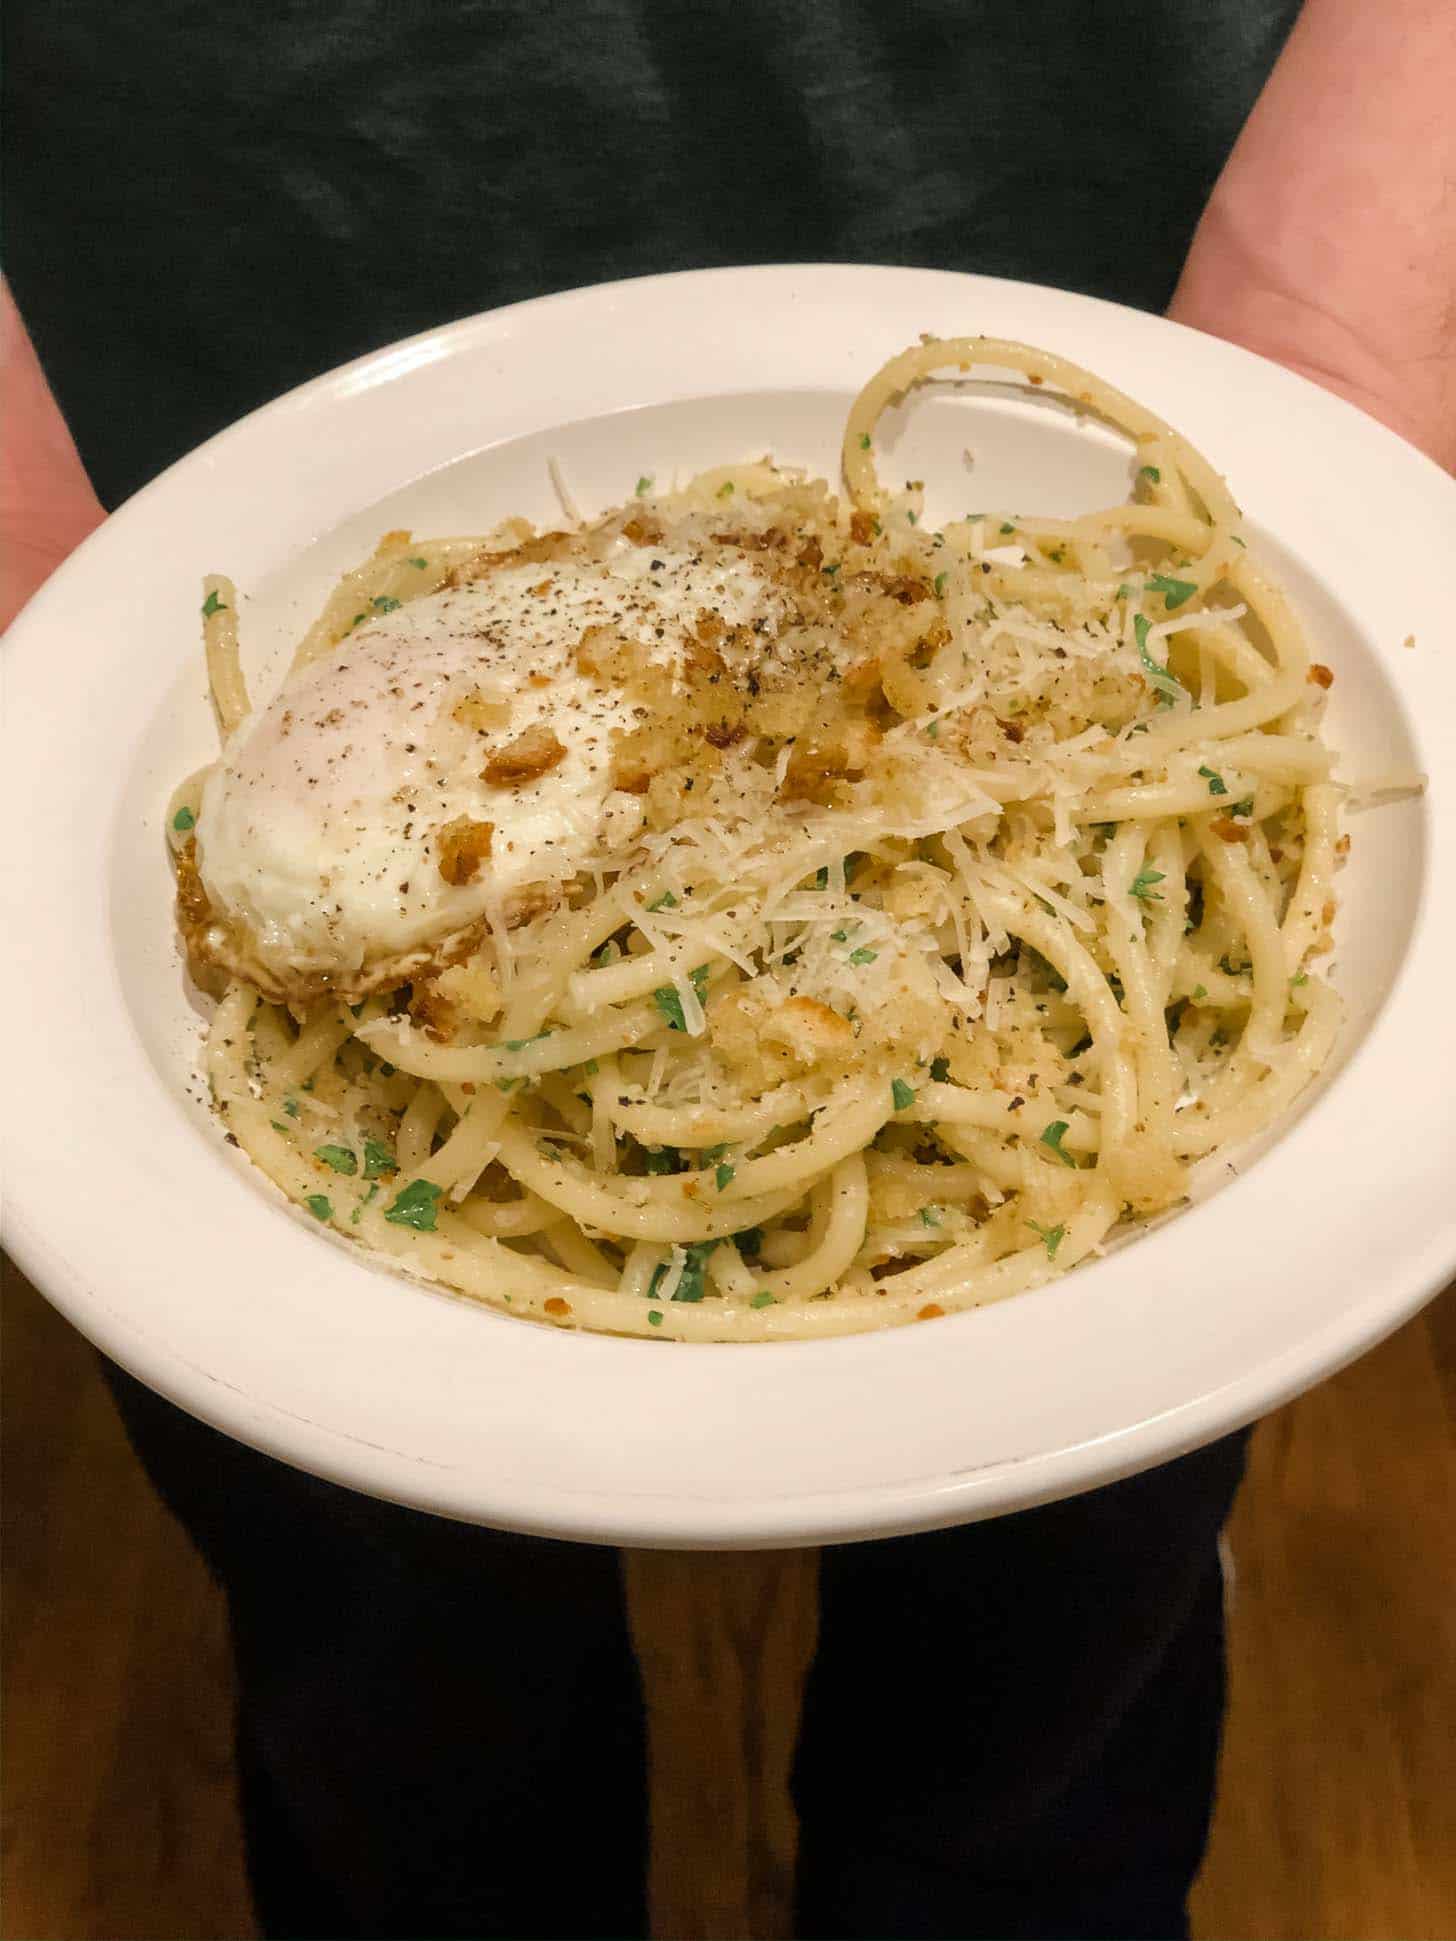 spaghetti salerno in a white bowl